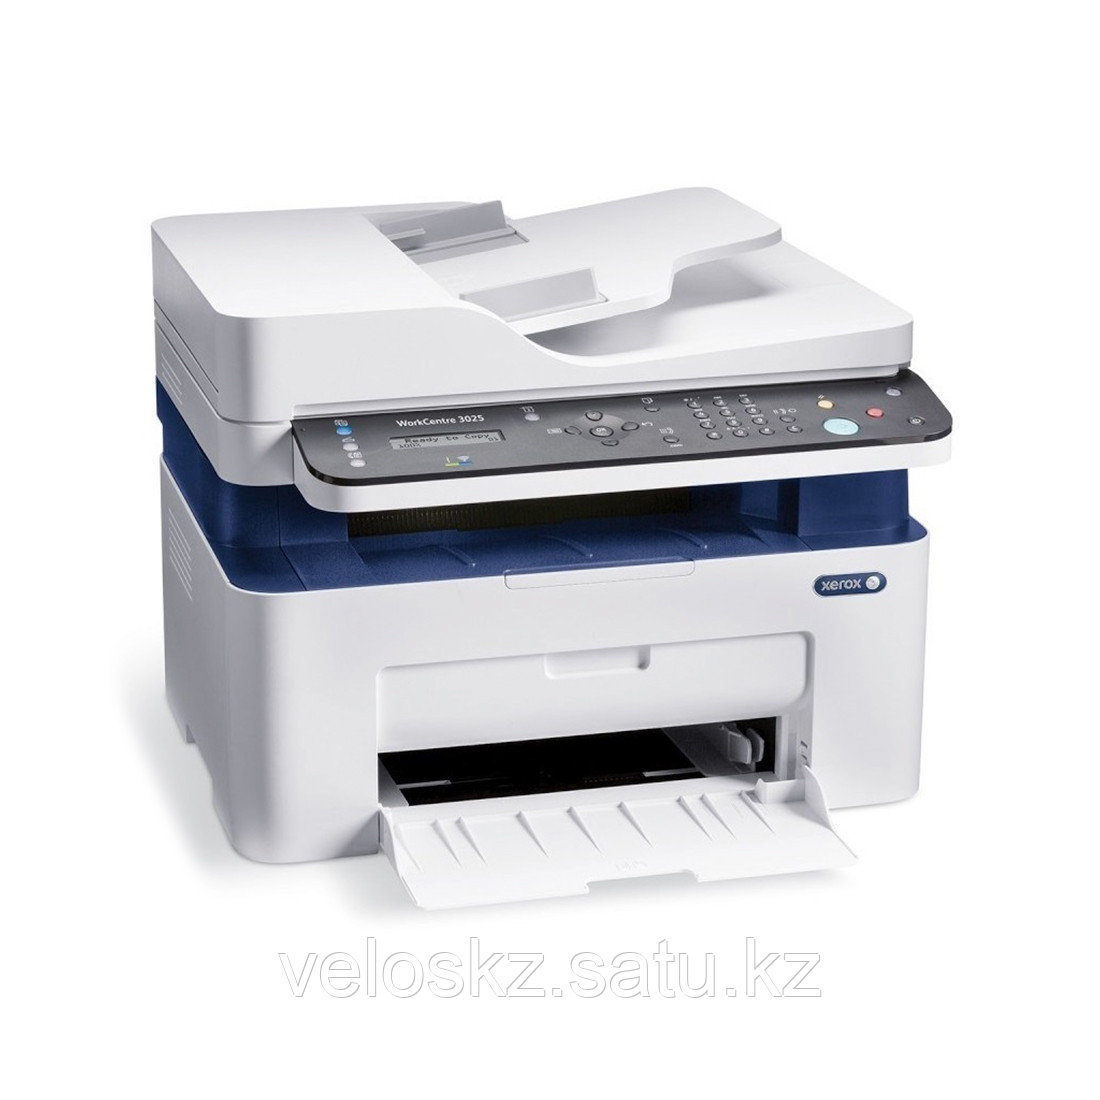 Xerox МФУ Xerox WorkCentre 3025NI, A4